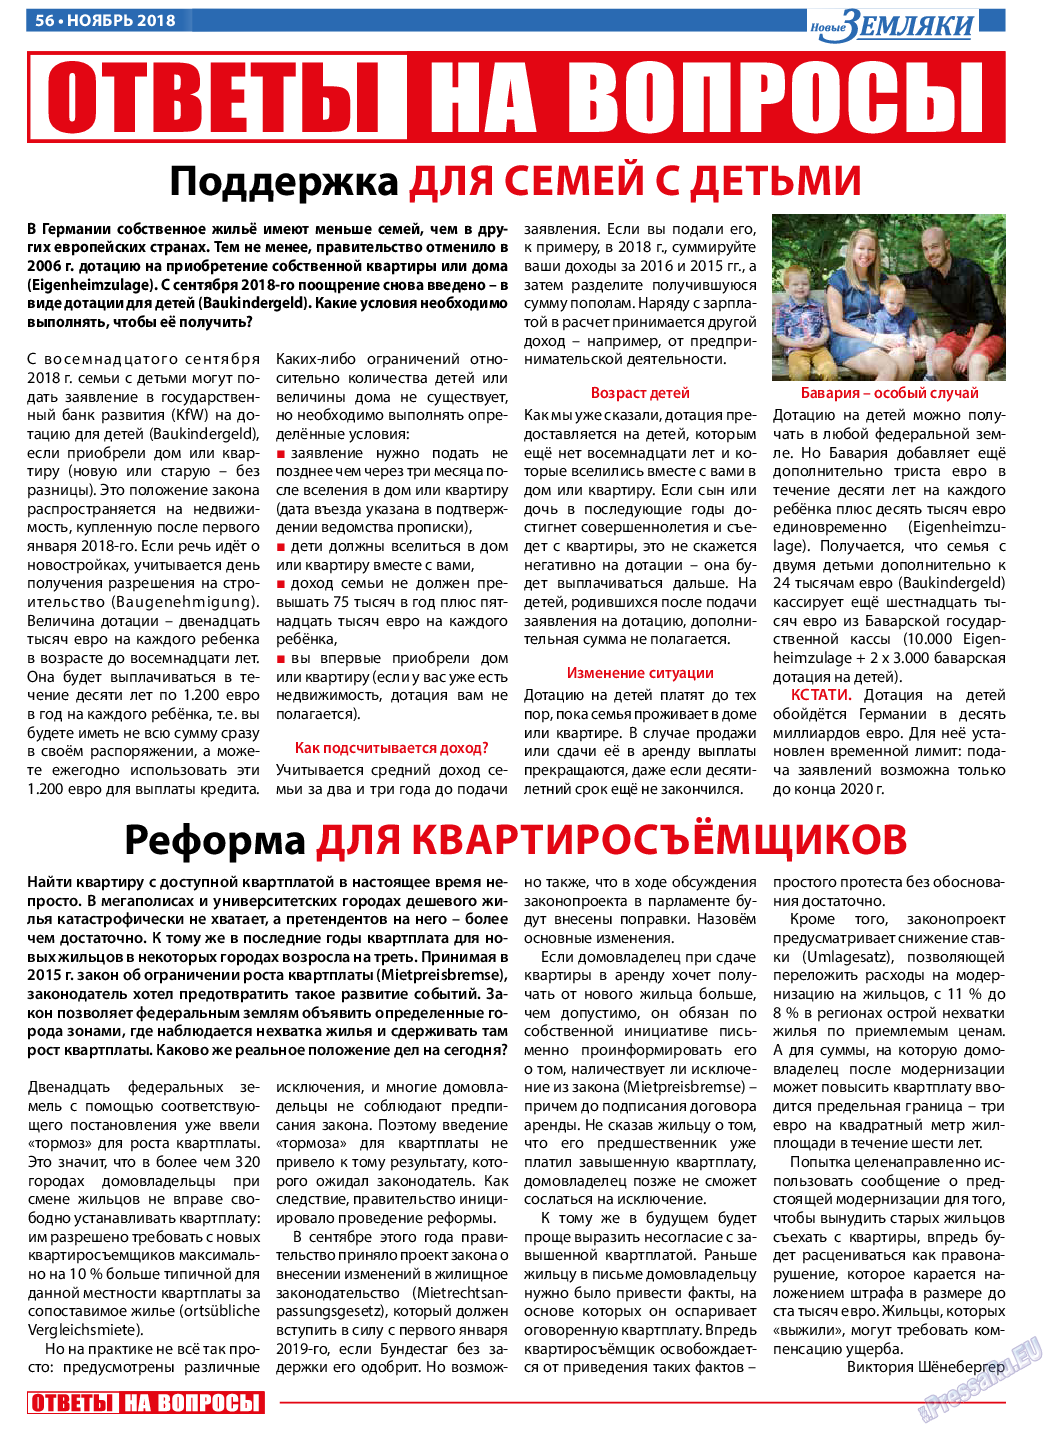 Новые Земляки, газета. 2018 №11 стр.56